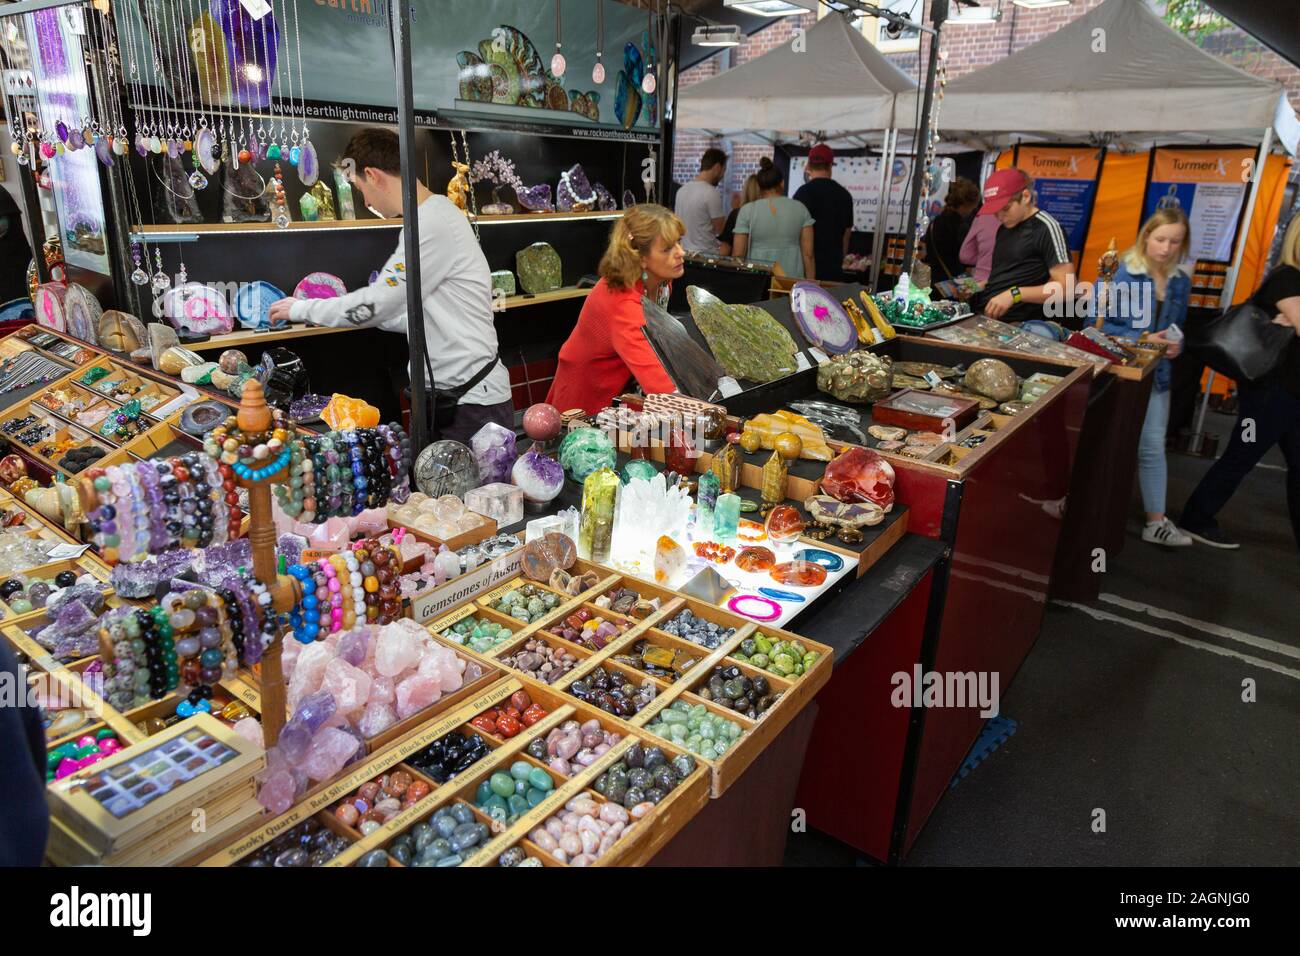 The Rocks Market, Sydney Australien - Händler, die bunte Mineralien an einem Handwerksstand verkaufen, Sydney, New South Wales, Australien Stockfoto